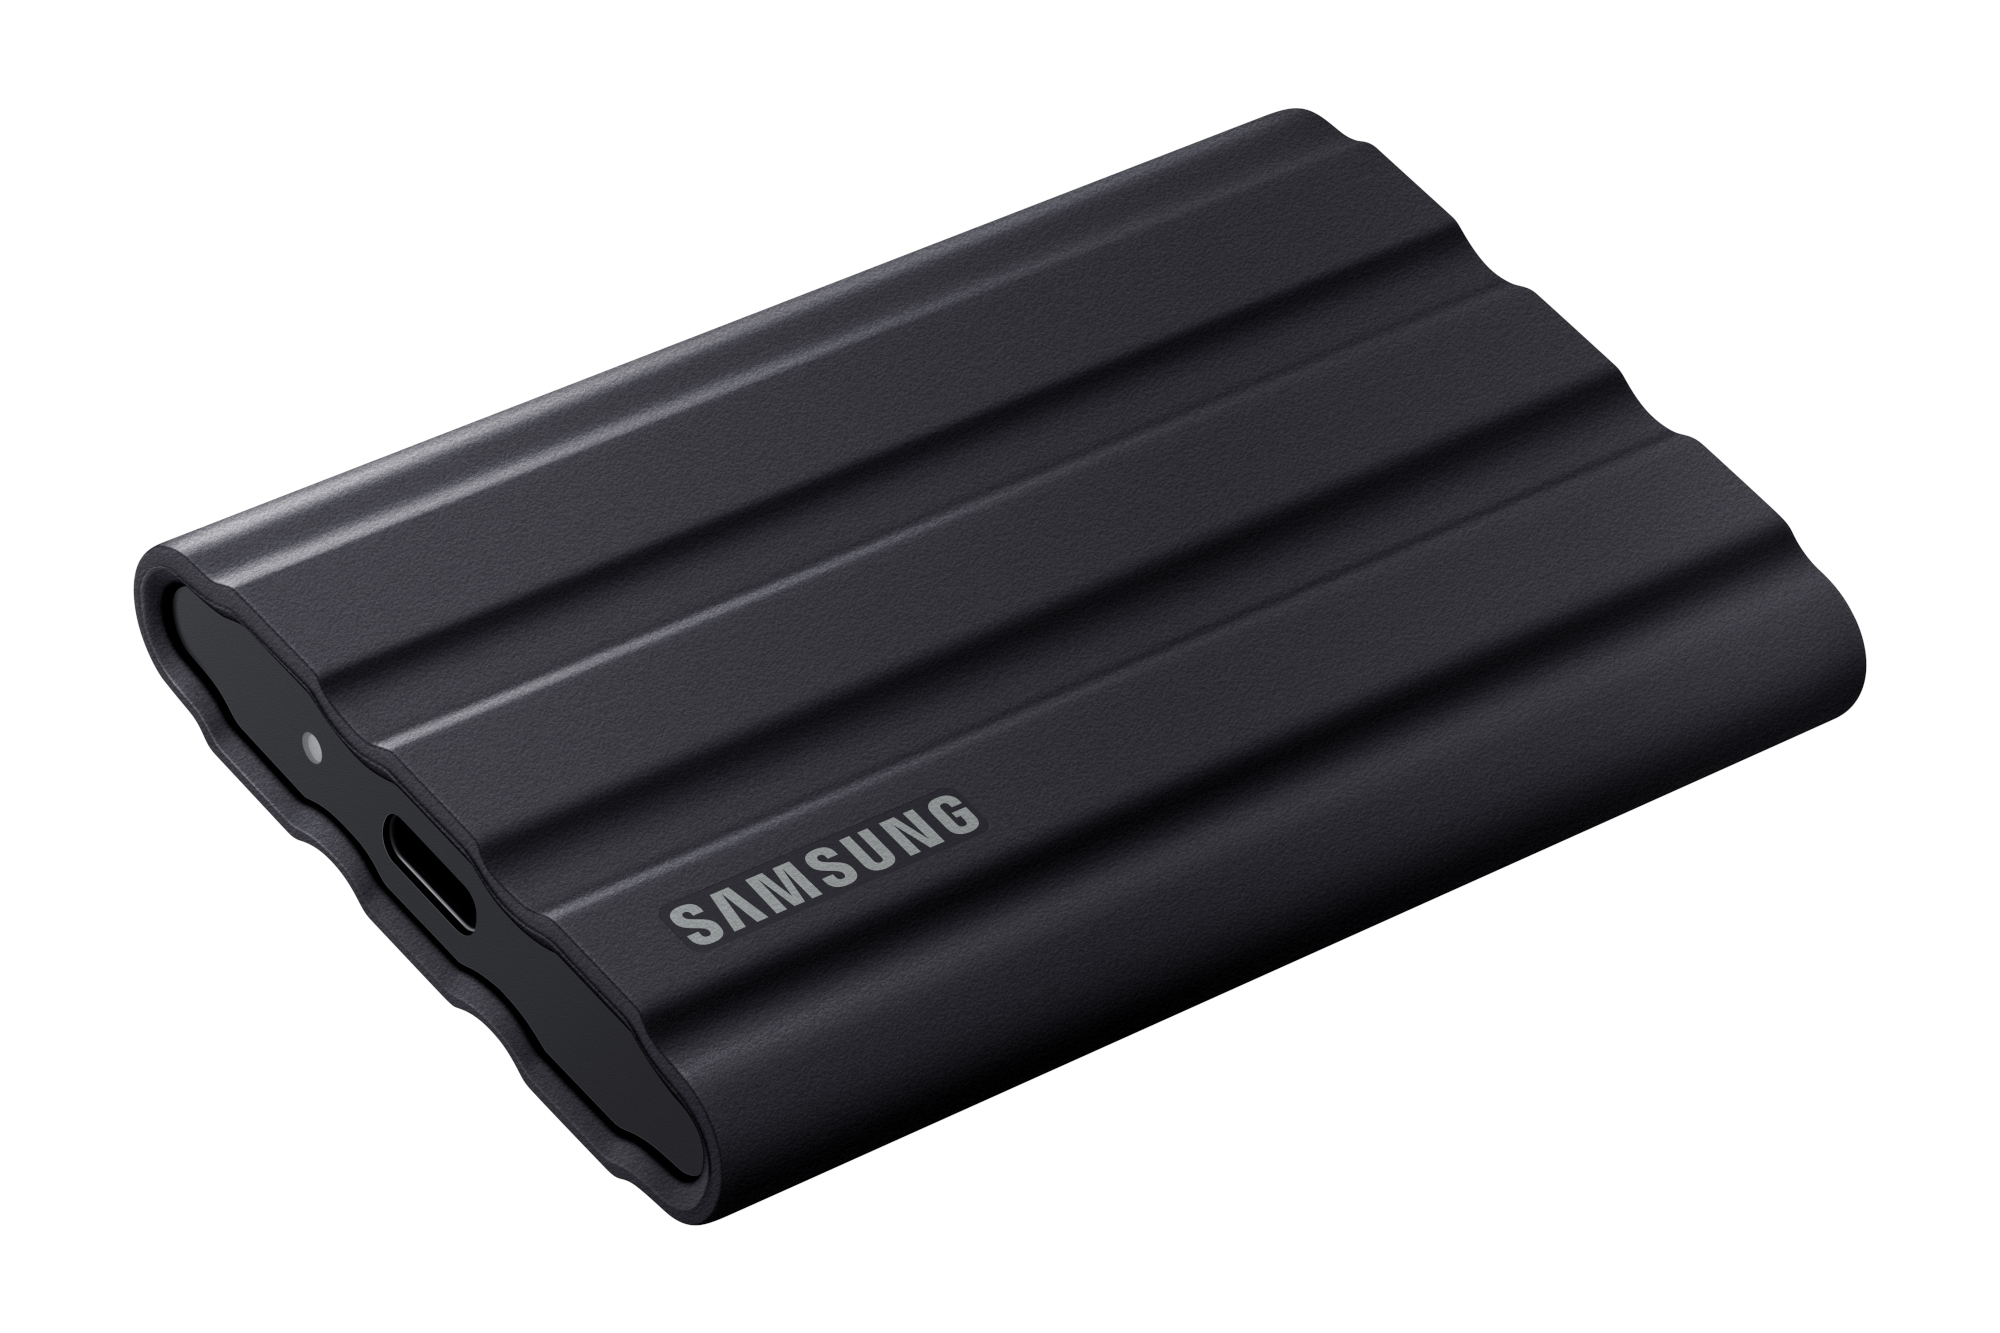 Samsung T7 Shield - Best performance USB drive